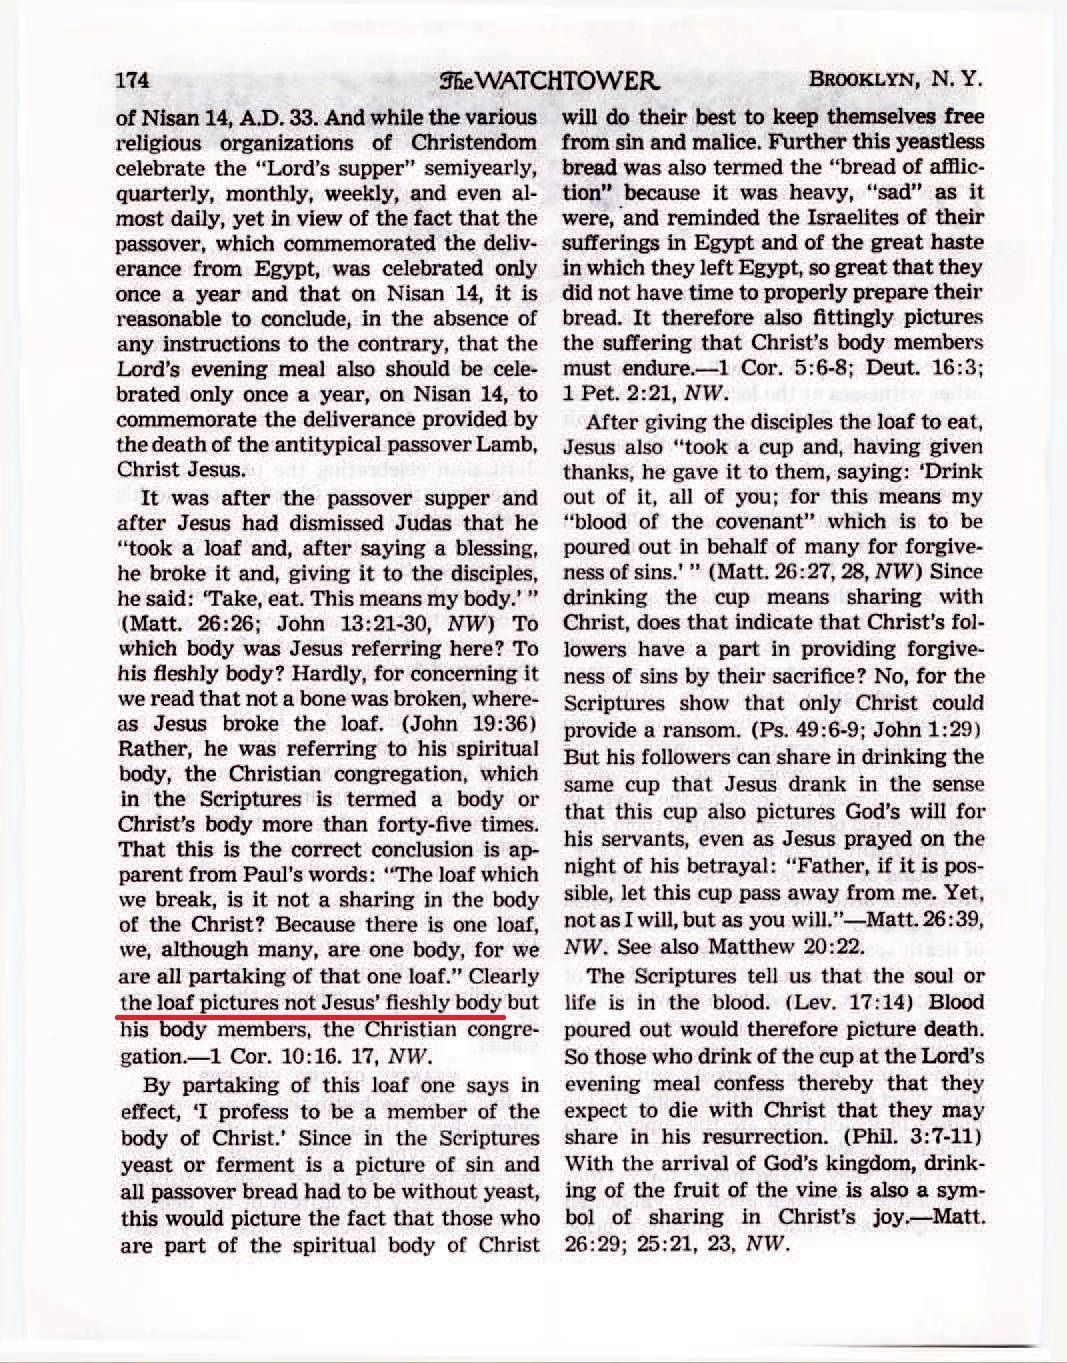 le collège central, sa vérité va-t-elle croissante ?  - Page 3 The-Watchtower-March-15-1954-p174